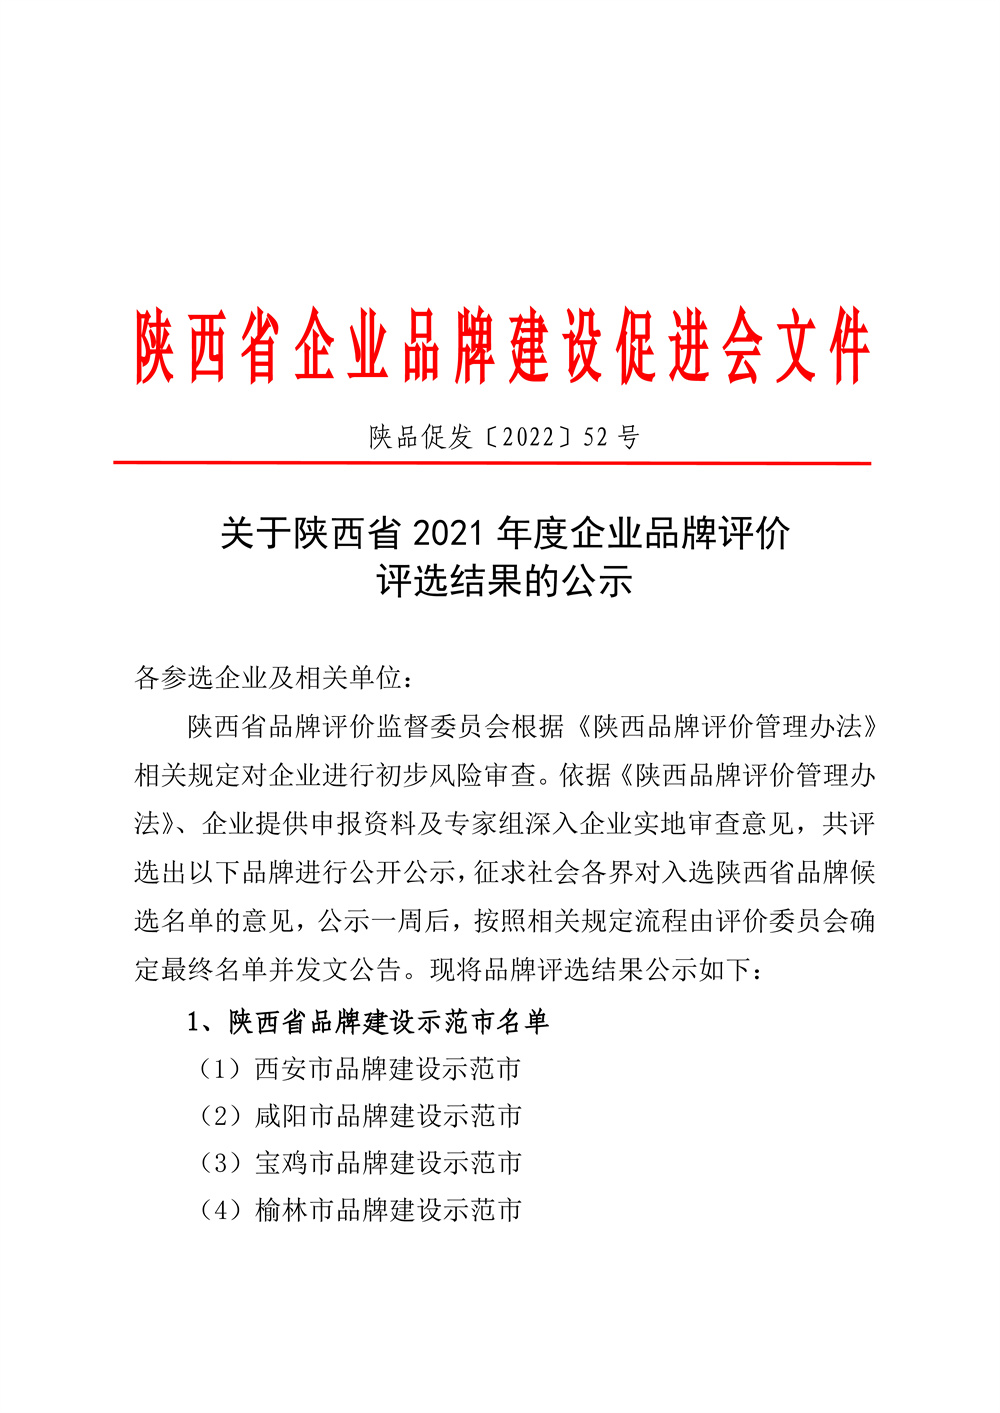 22-52陕西省2021年度品牌评选公示通知_页面_01.jpg